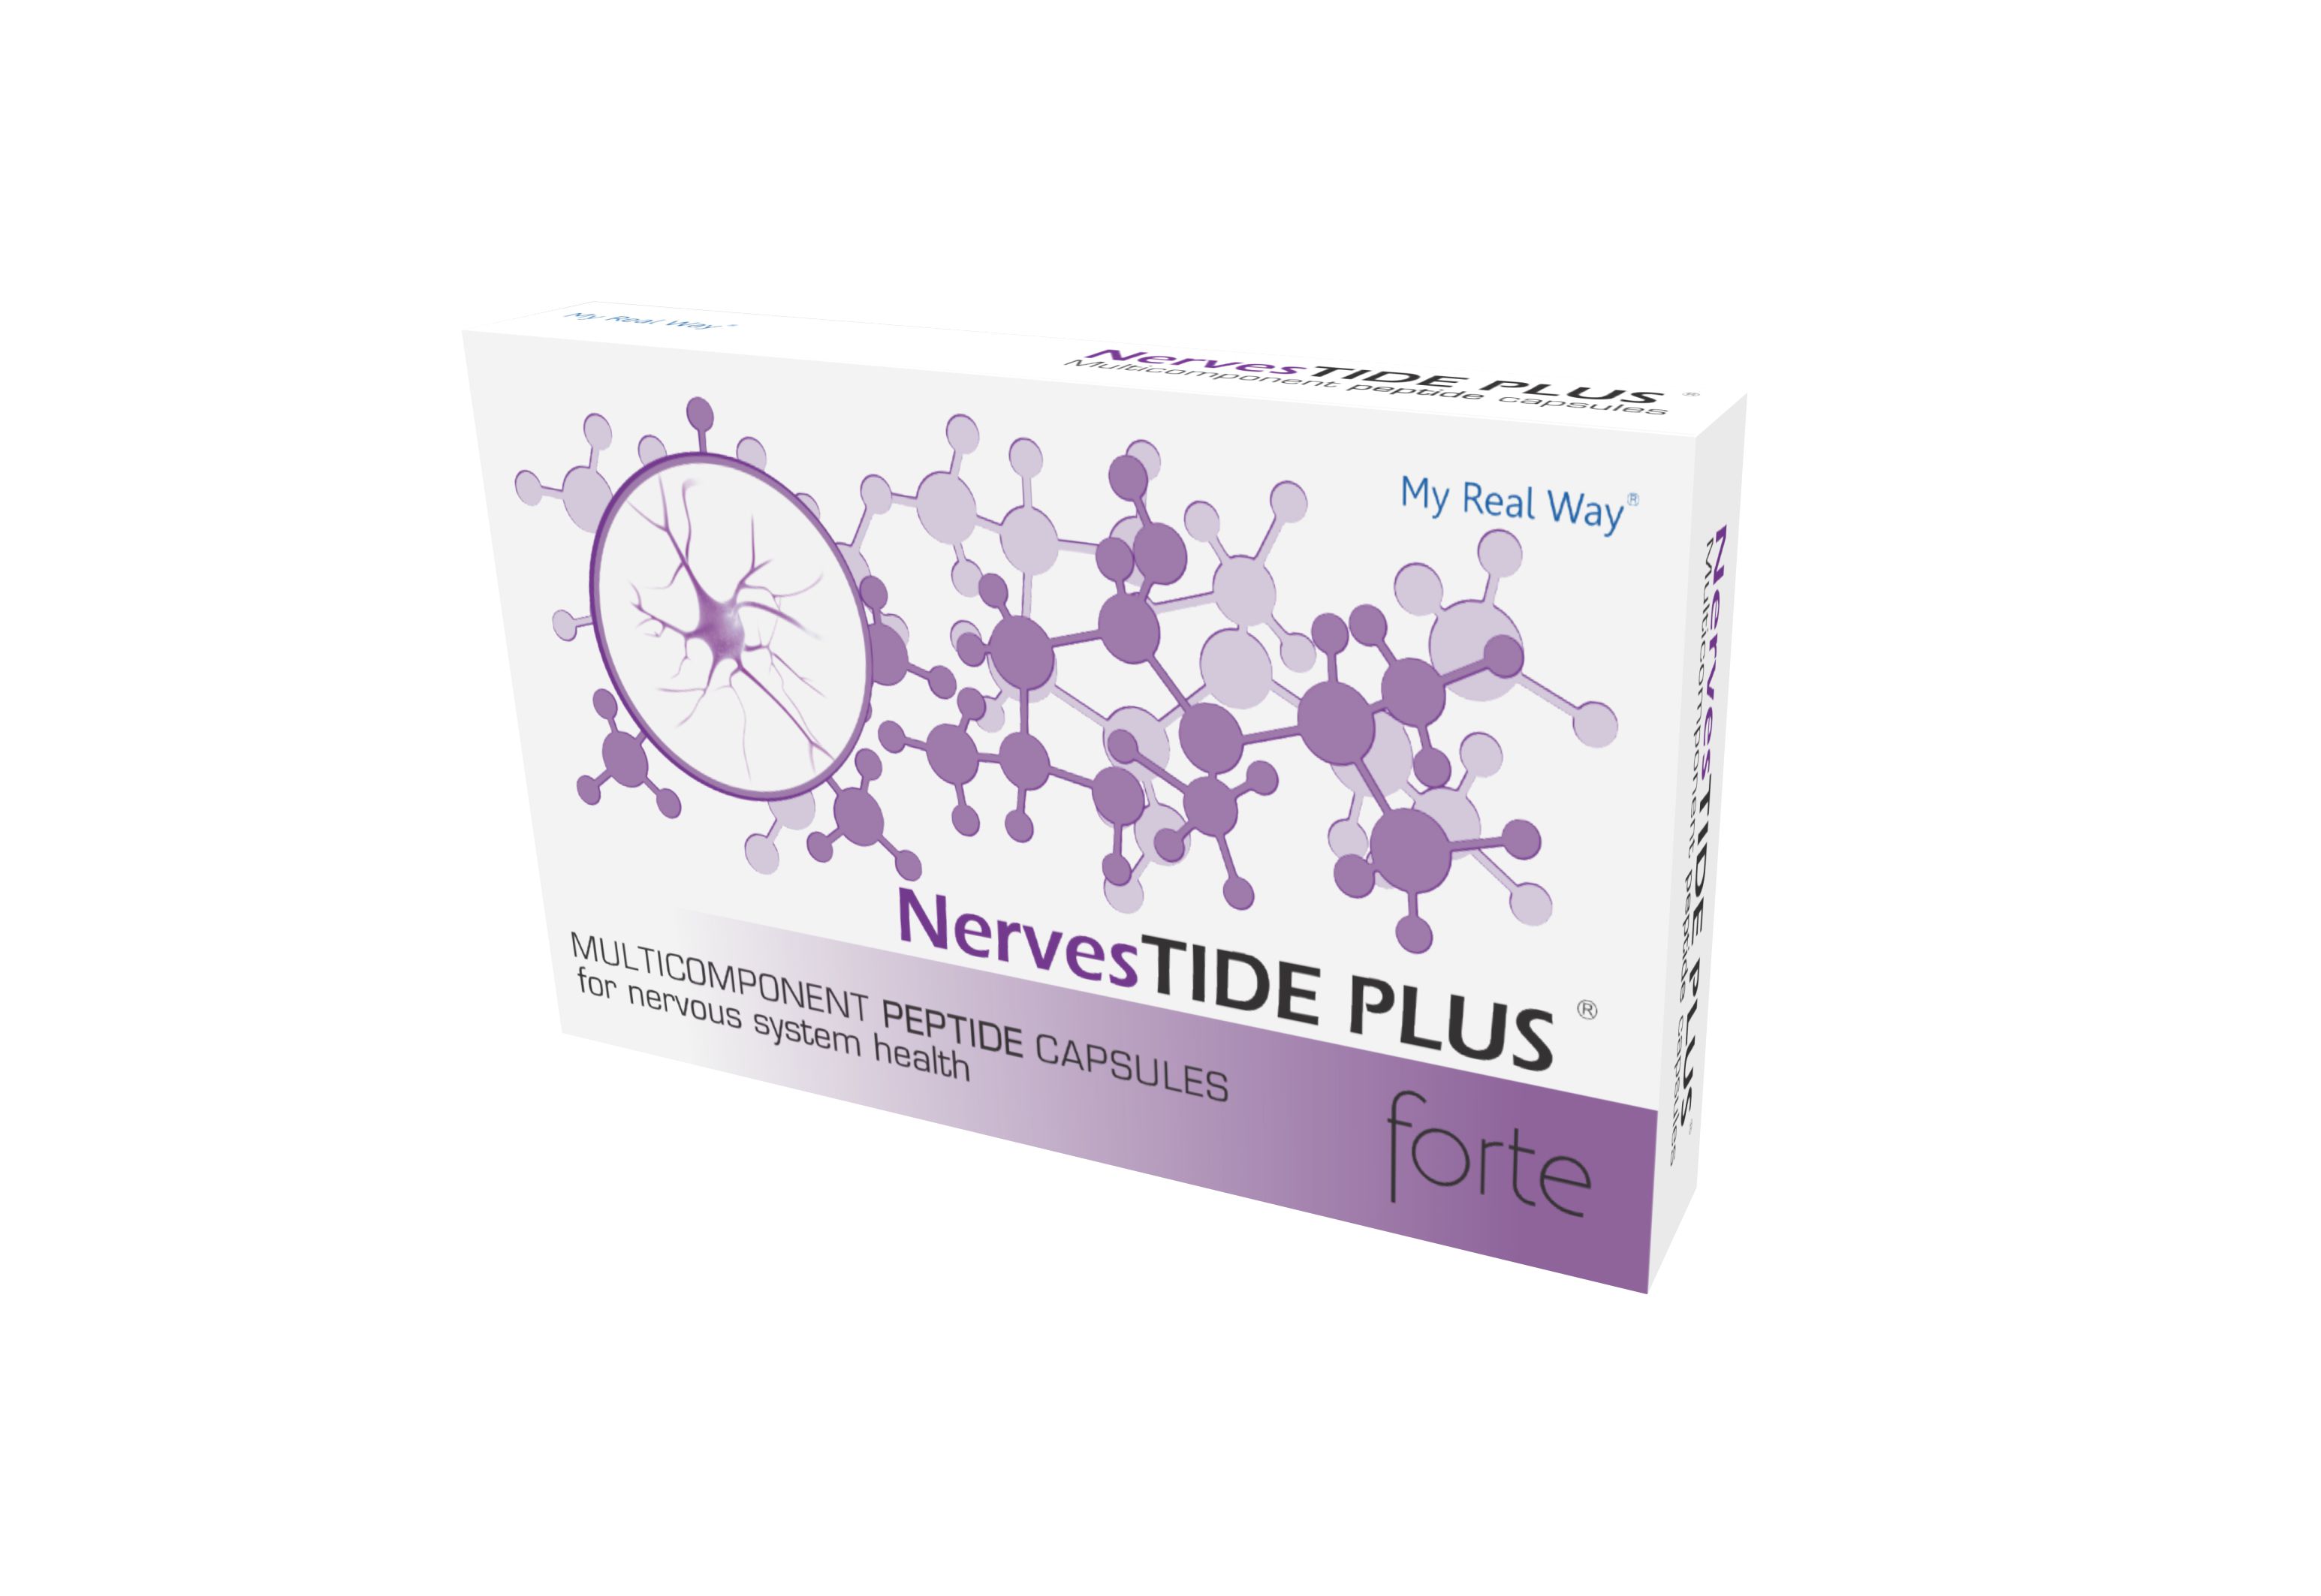 NervesTIDE PLUS forte peptides for nervous system